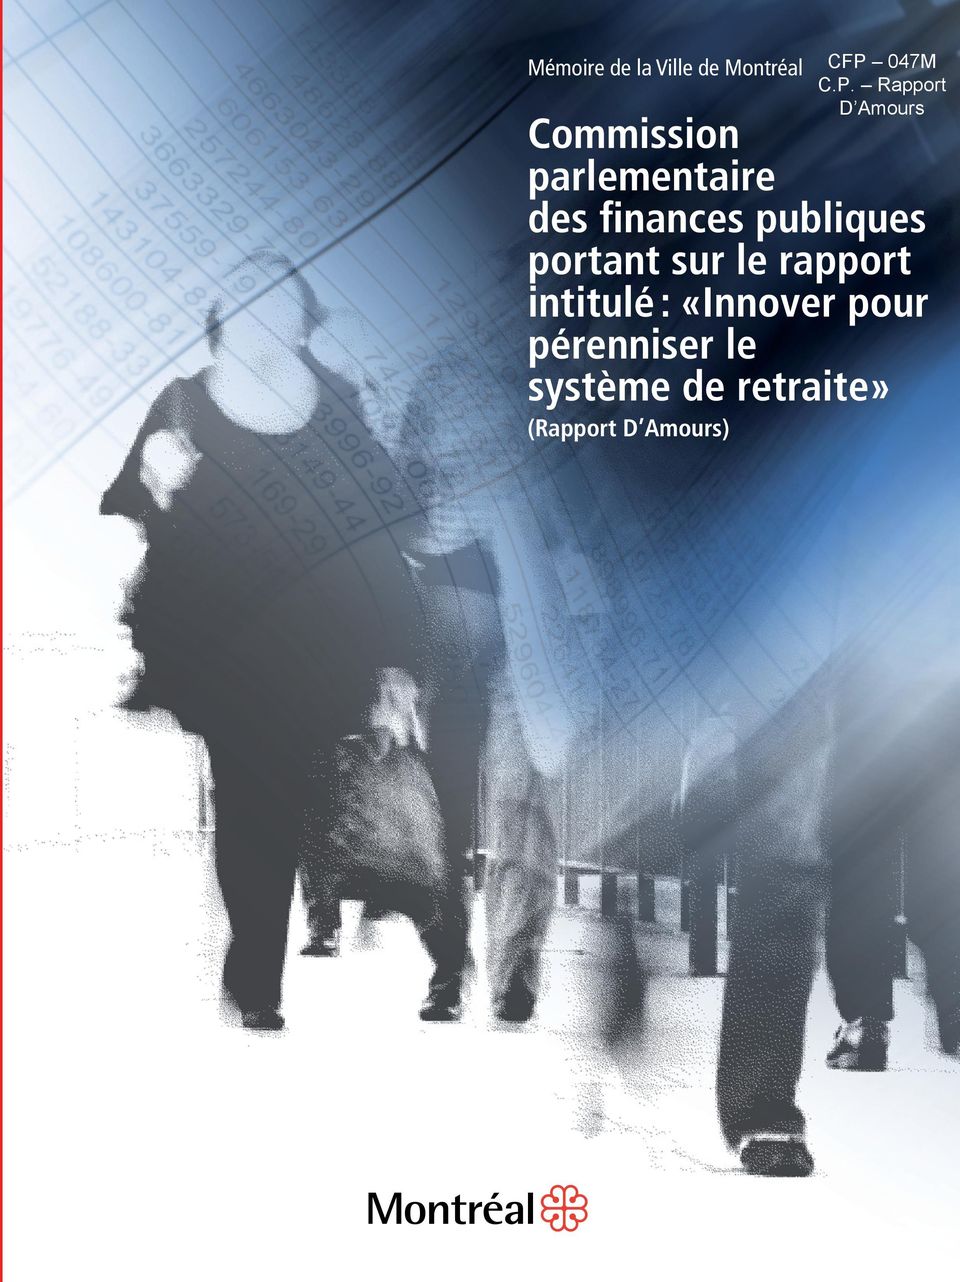 Rapport D Amours Commission parlementaire des